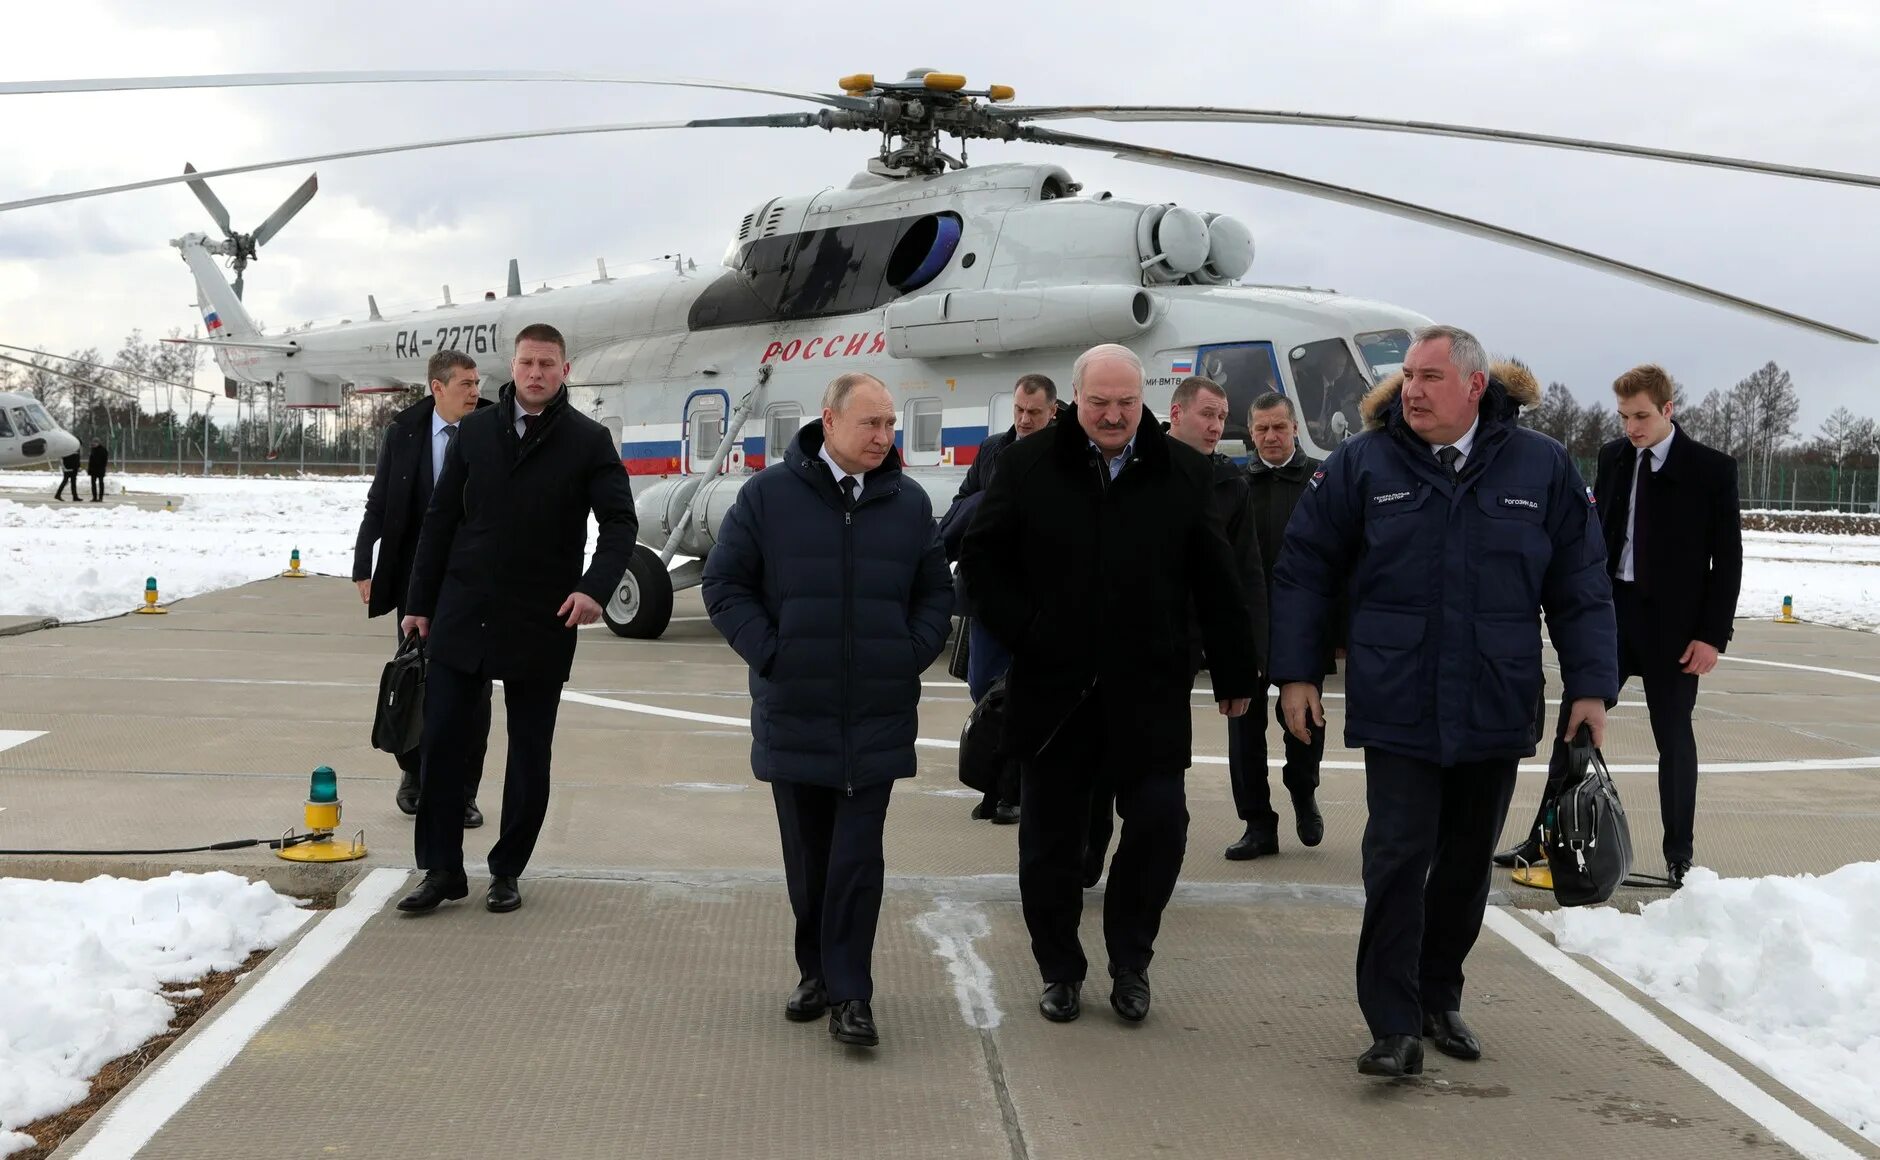 Лукашенко на космодроме Восточный. Рогозин и космодром Восточный. Передают риа новости